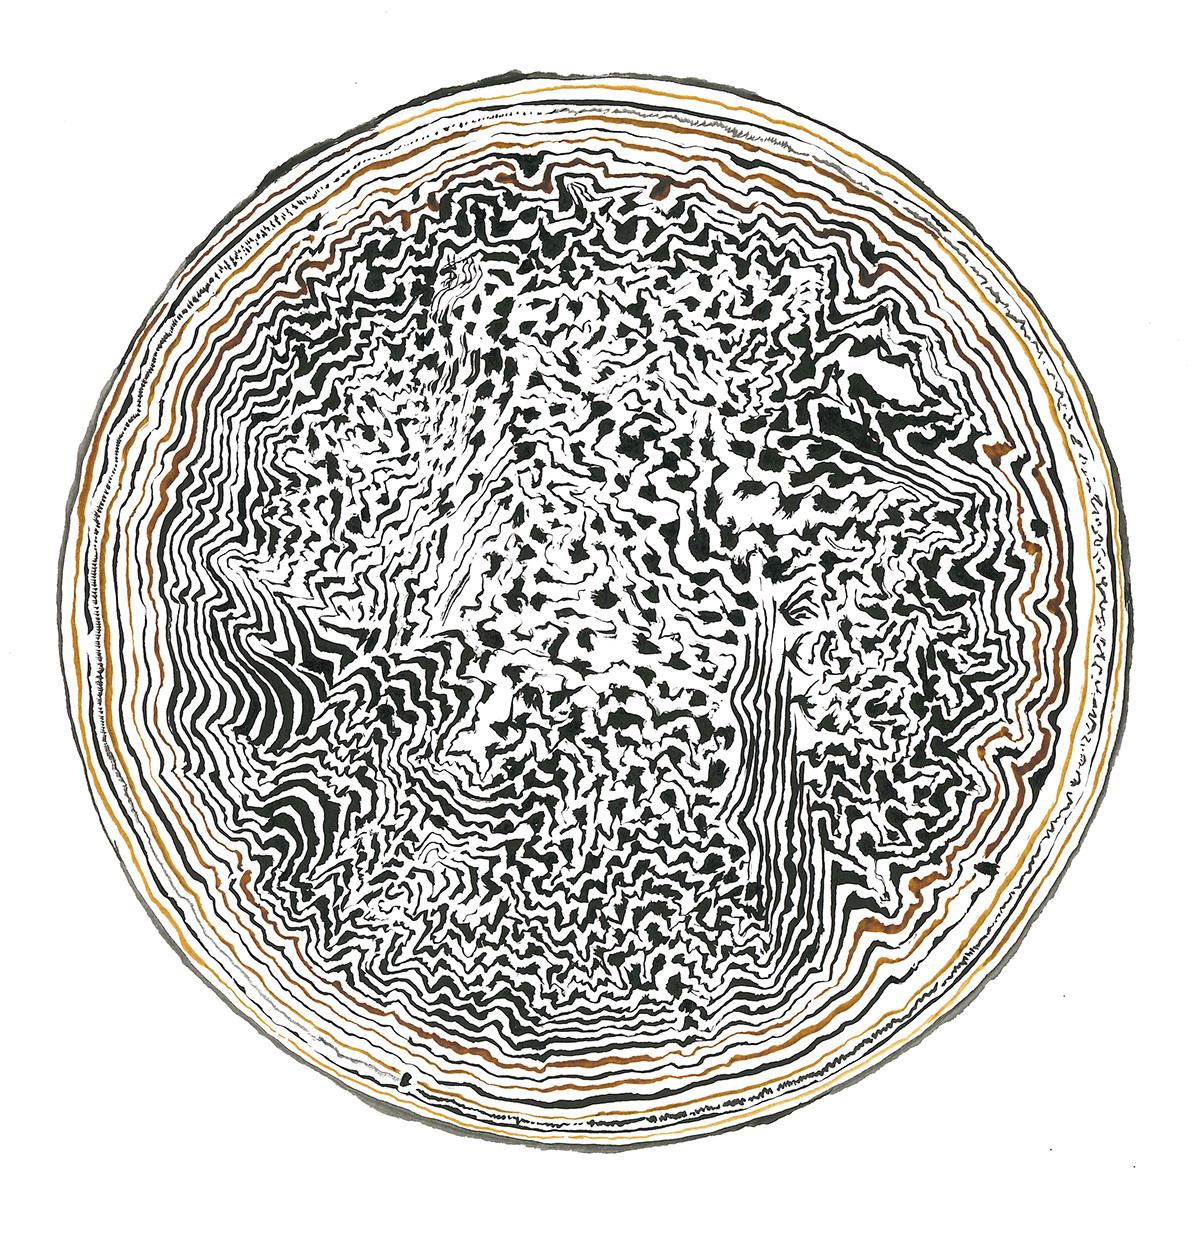 brush & ink abstract disk circle